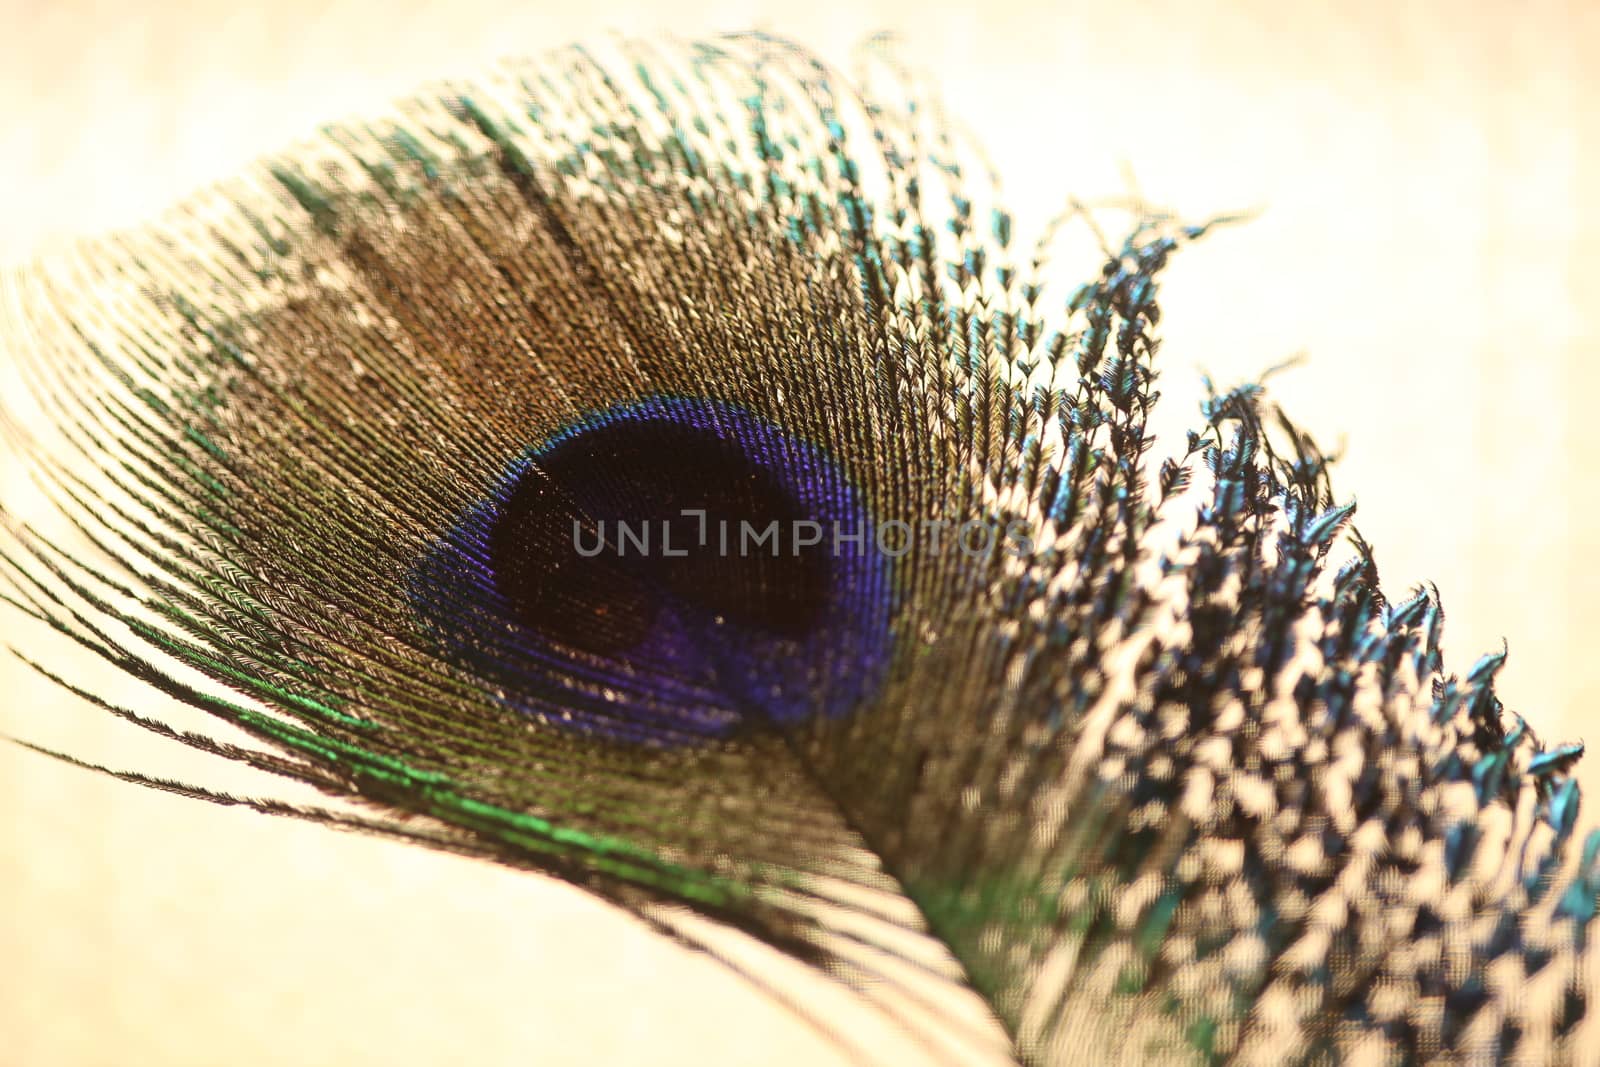 peacock feather closeup